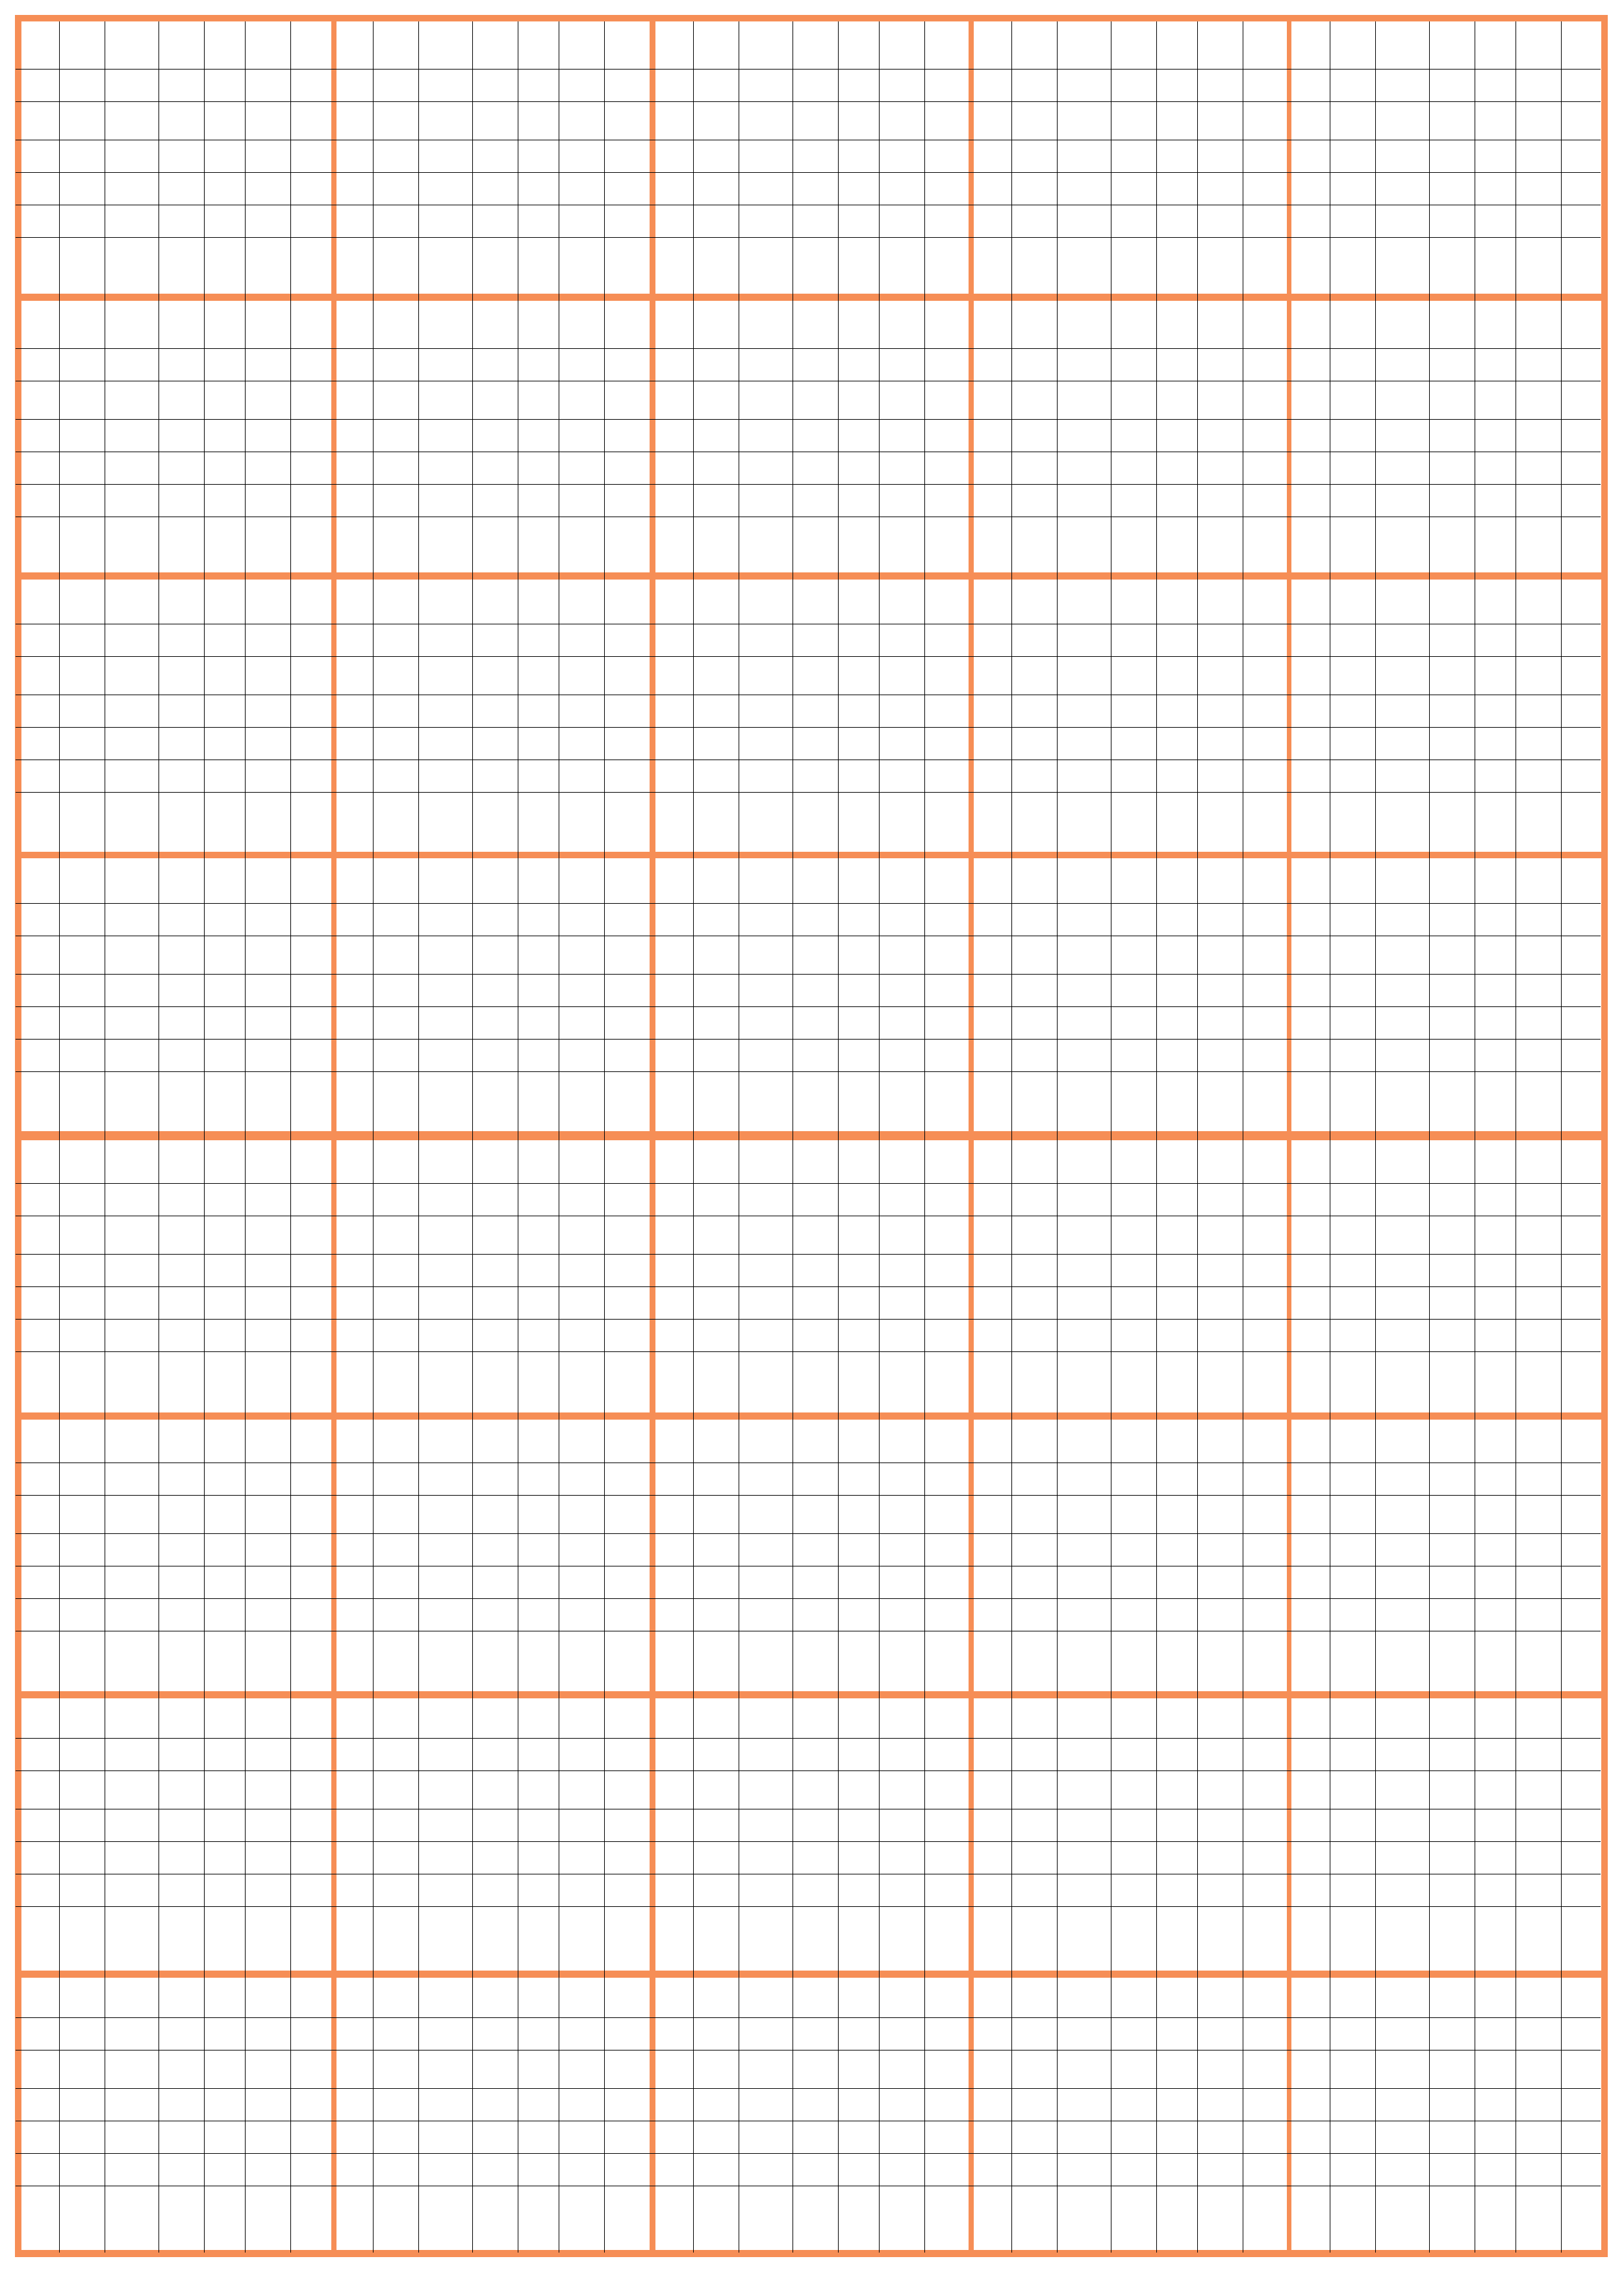 1-centimeter-grid-paper-templates-at-allbusinesstemplatescom-5